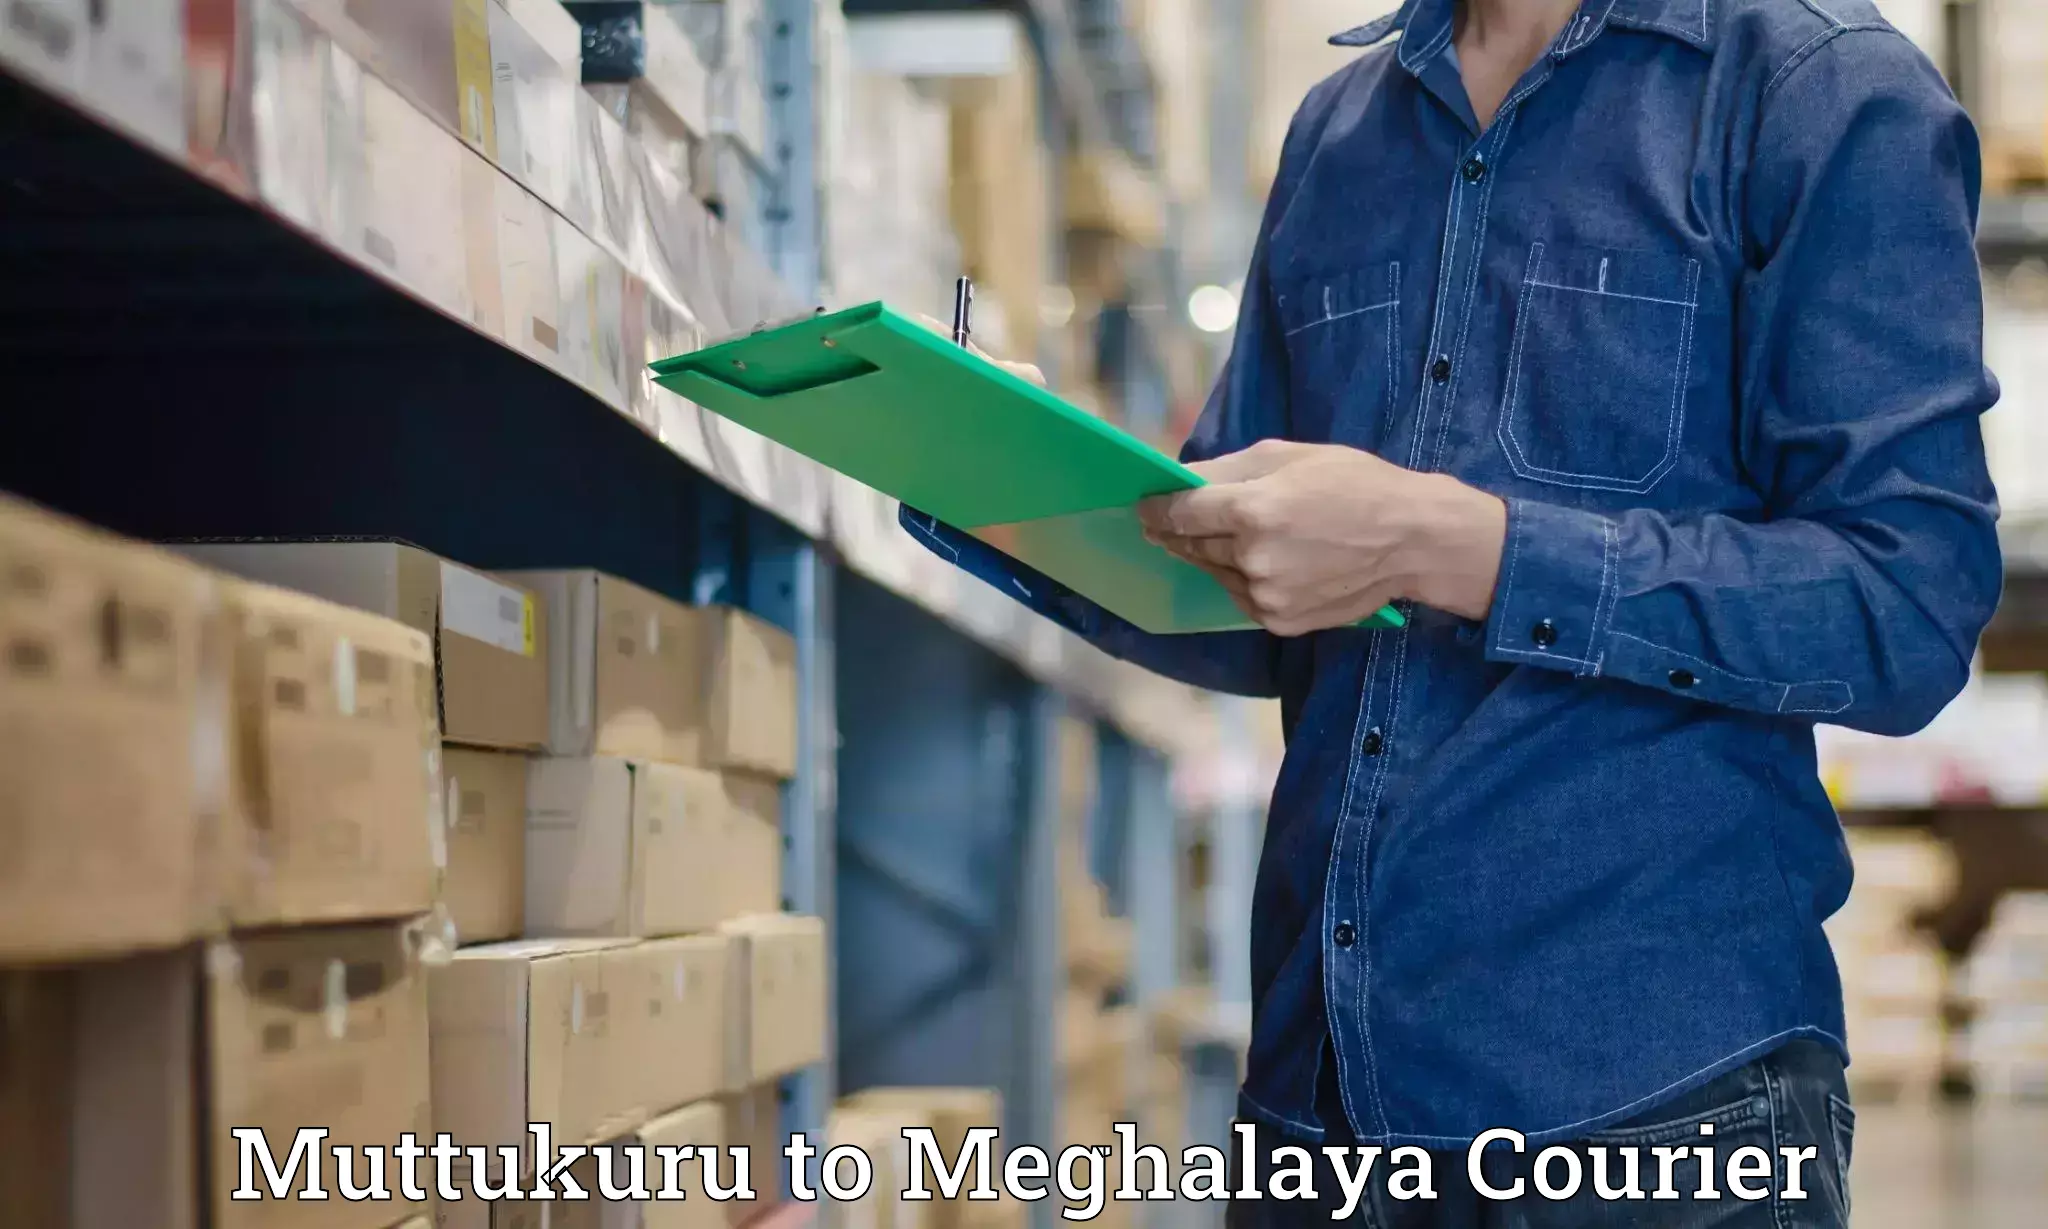 International courier networks Muttukuru to Umsaw